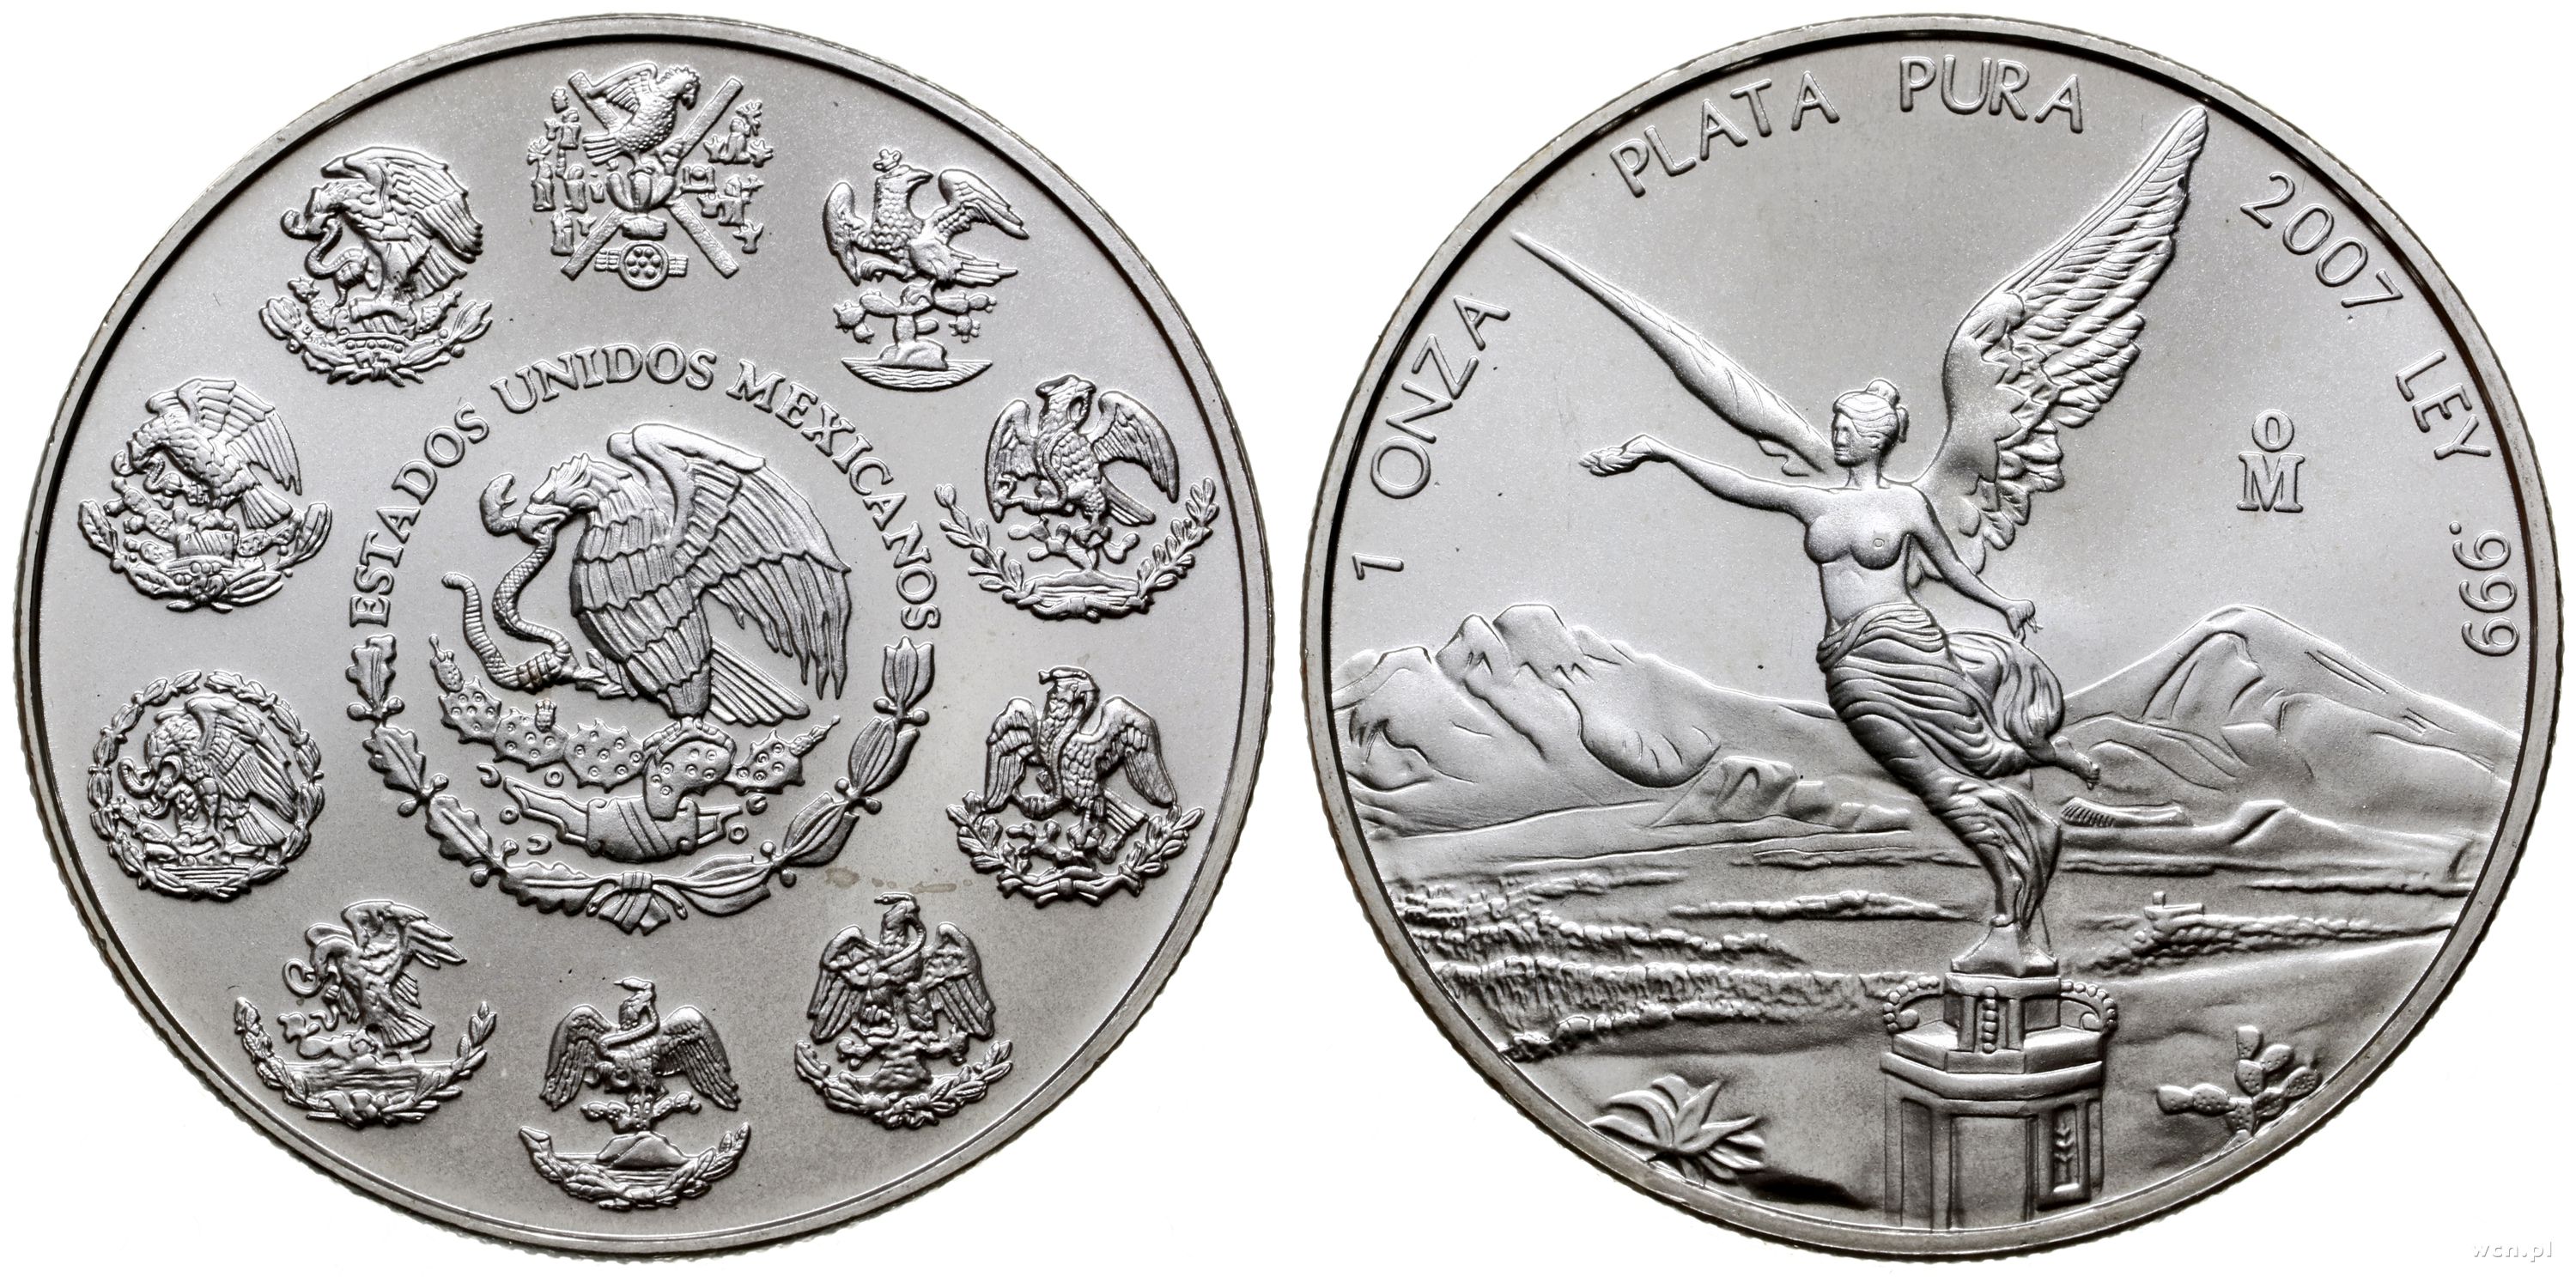 Серебро пробы монеты. Мексика 1 онза, 2001. Мексиканская монета 2005 года. Самая красивая монета в мире Мексика. Мексиканская серебряная монета 2005 года.